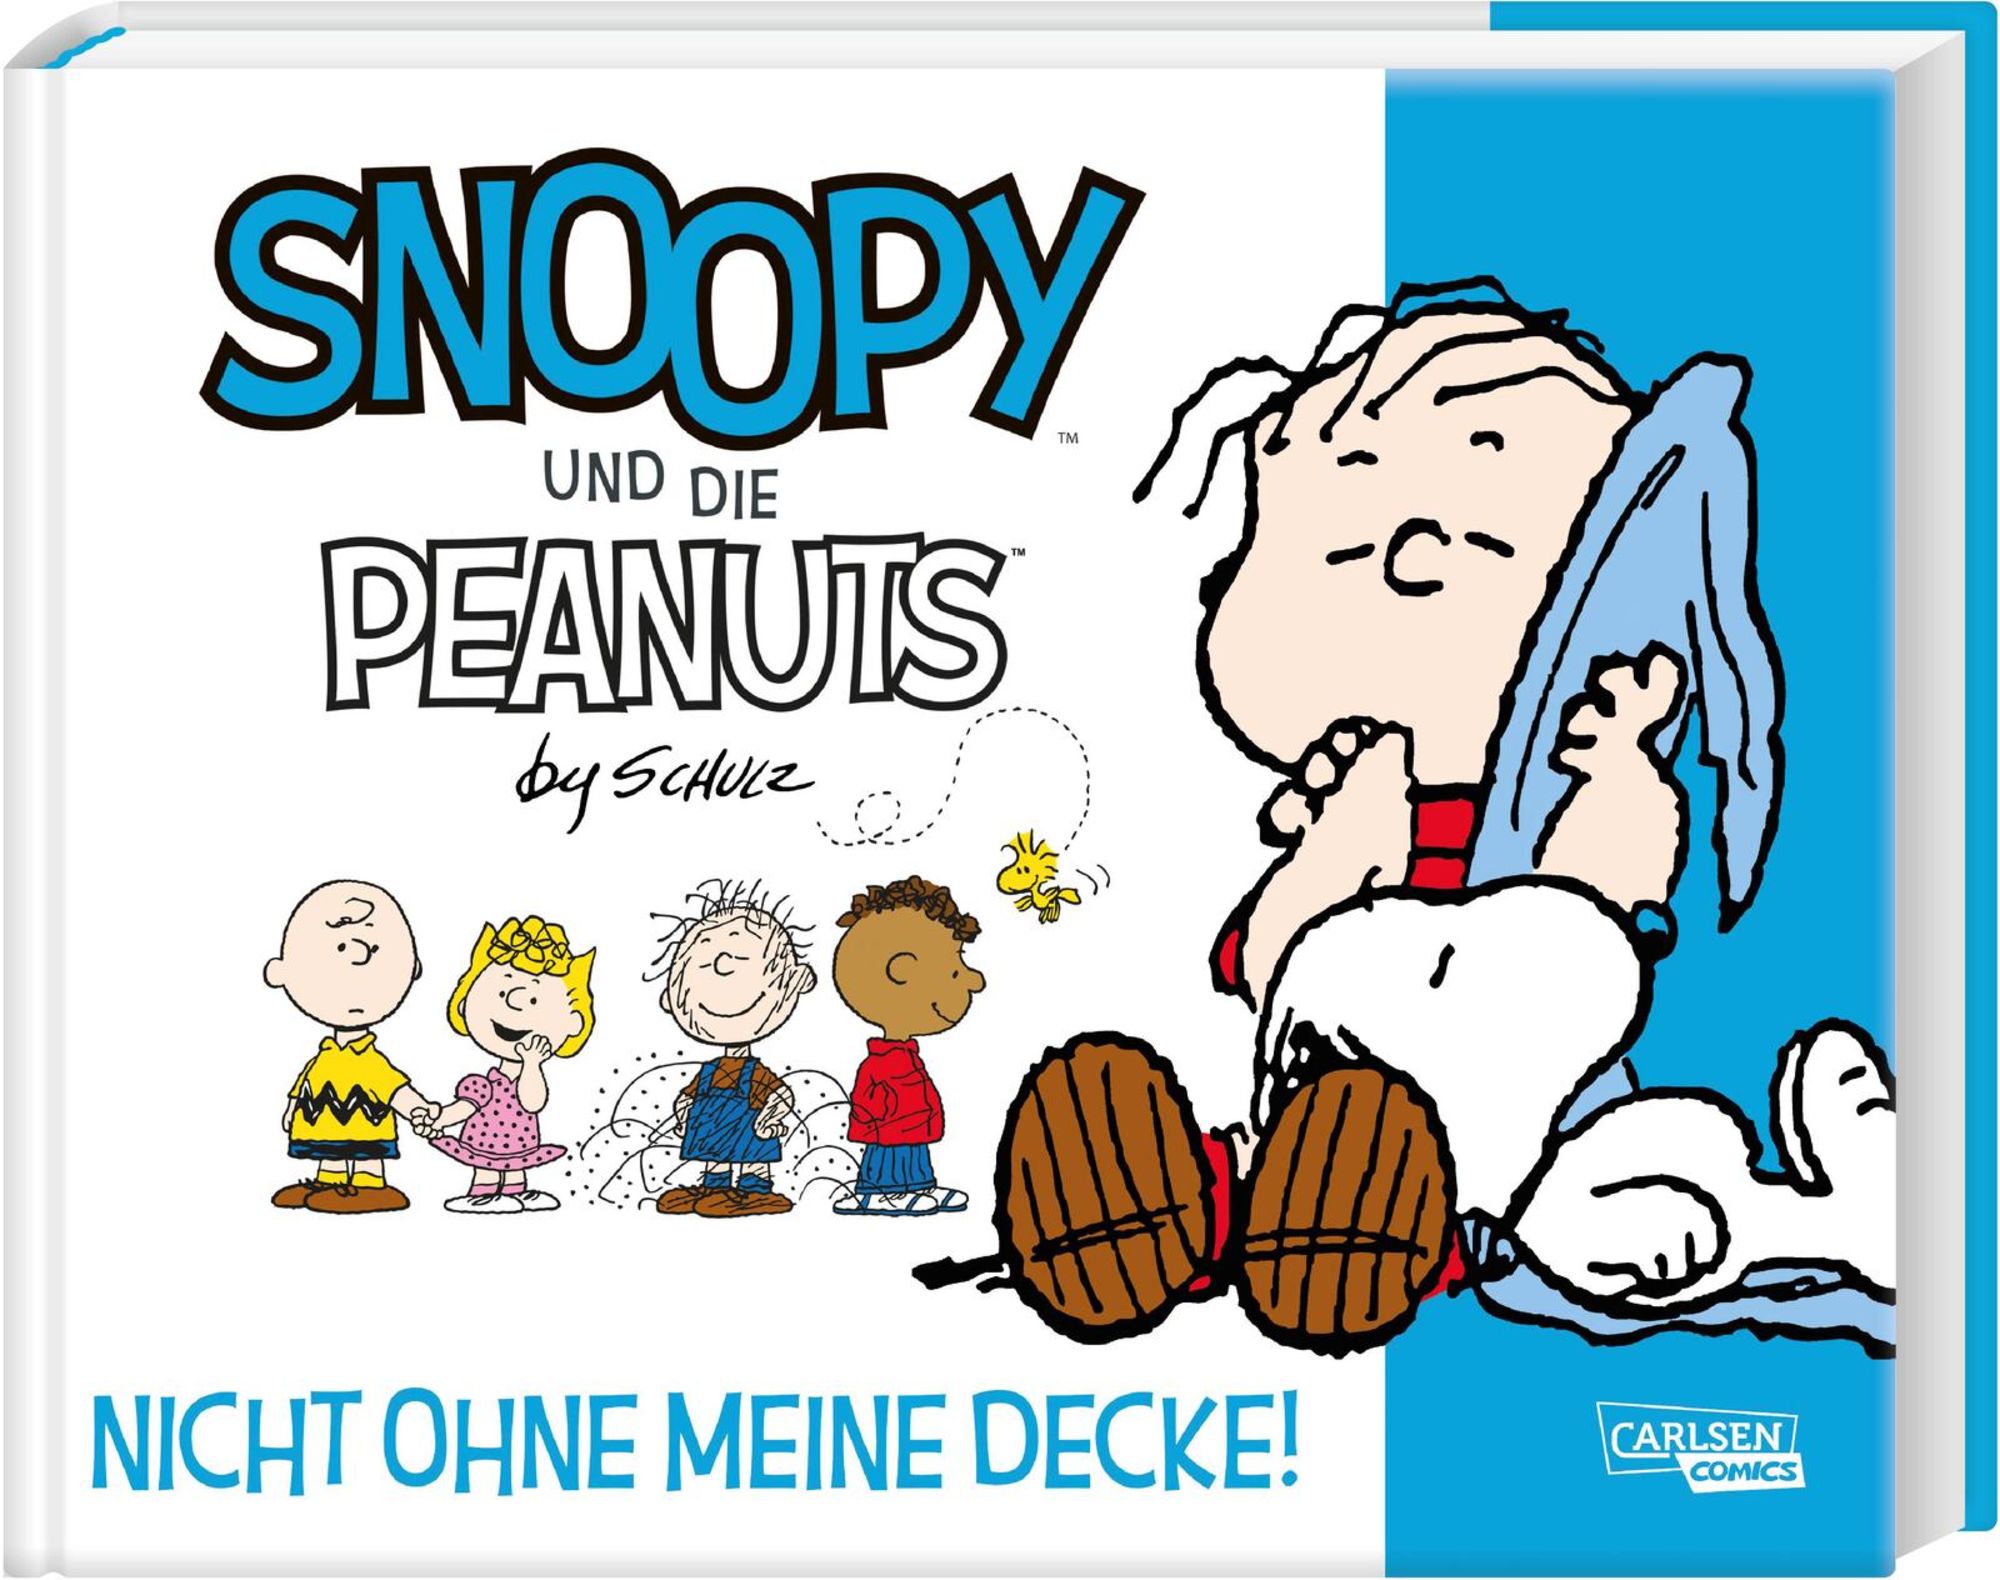 https://images.thalia.media/-/BF2000-2000/6f7c0c8deb074fa1b99ec6fb52467f4b/snoopy-und-die-peanuts-2-nicht-ohne-meine-decke-taschenbuch-charles-m-schulz.jpeg